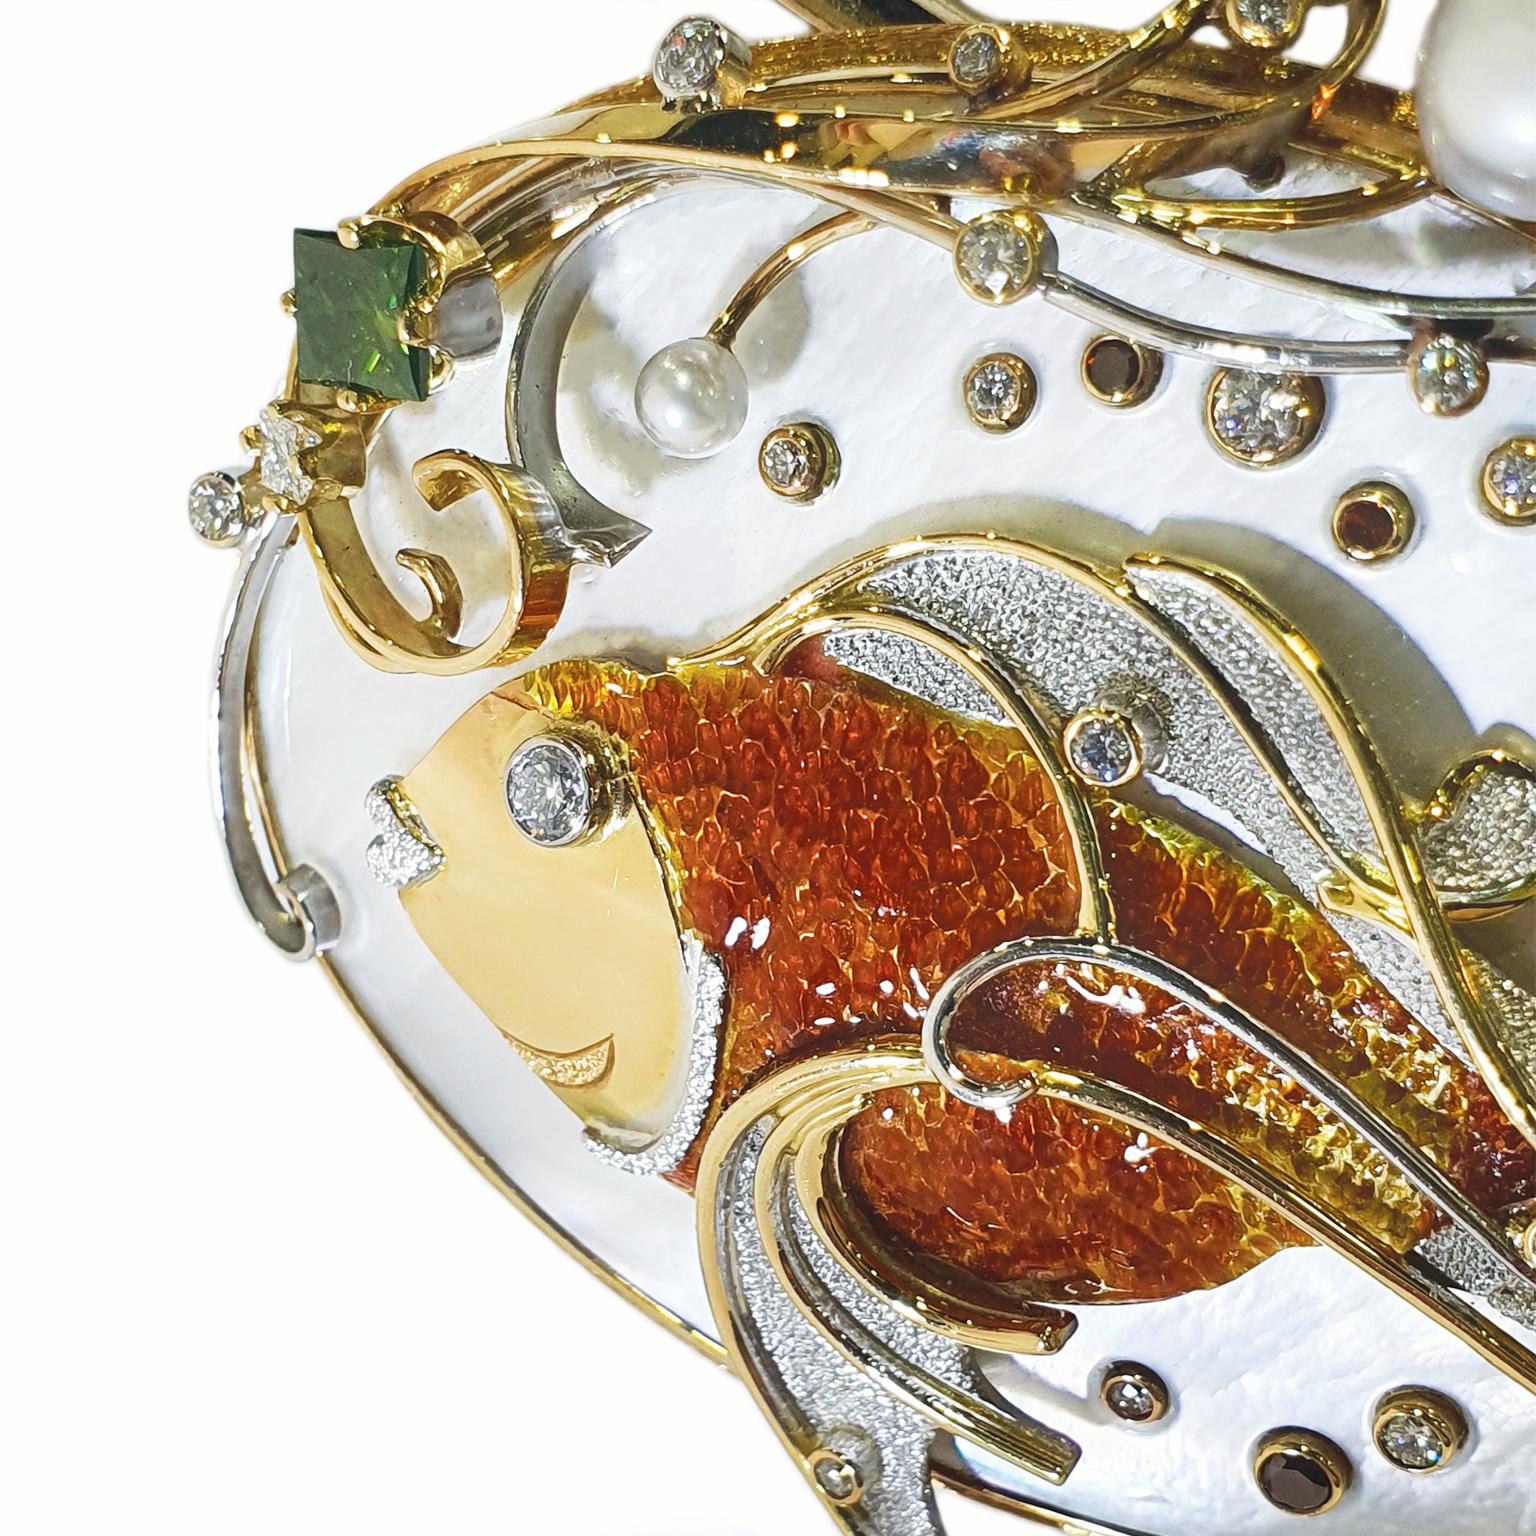 Le pendentif Fantail Goldfish de Paul Amey a été réalisé en or jaune et blanc 18 carats avec de la nacre, des diamants et de l'émail dur.

Paul a sculpté à la main la base ovale en nacre, créant ainsi un fond 